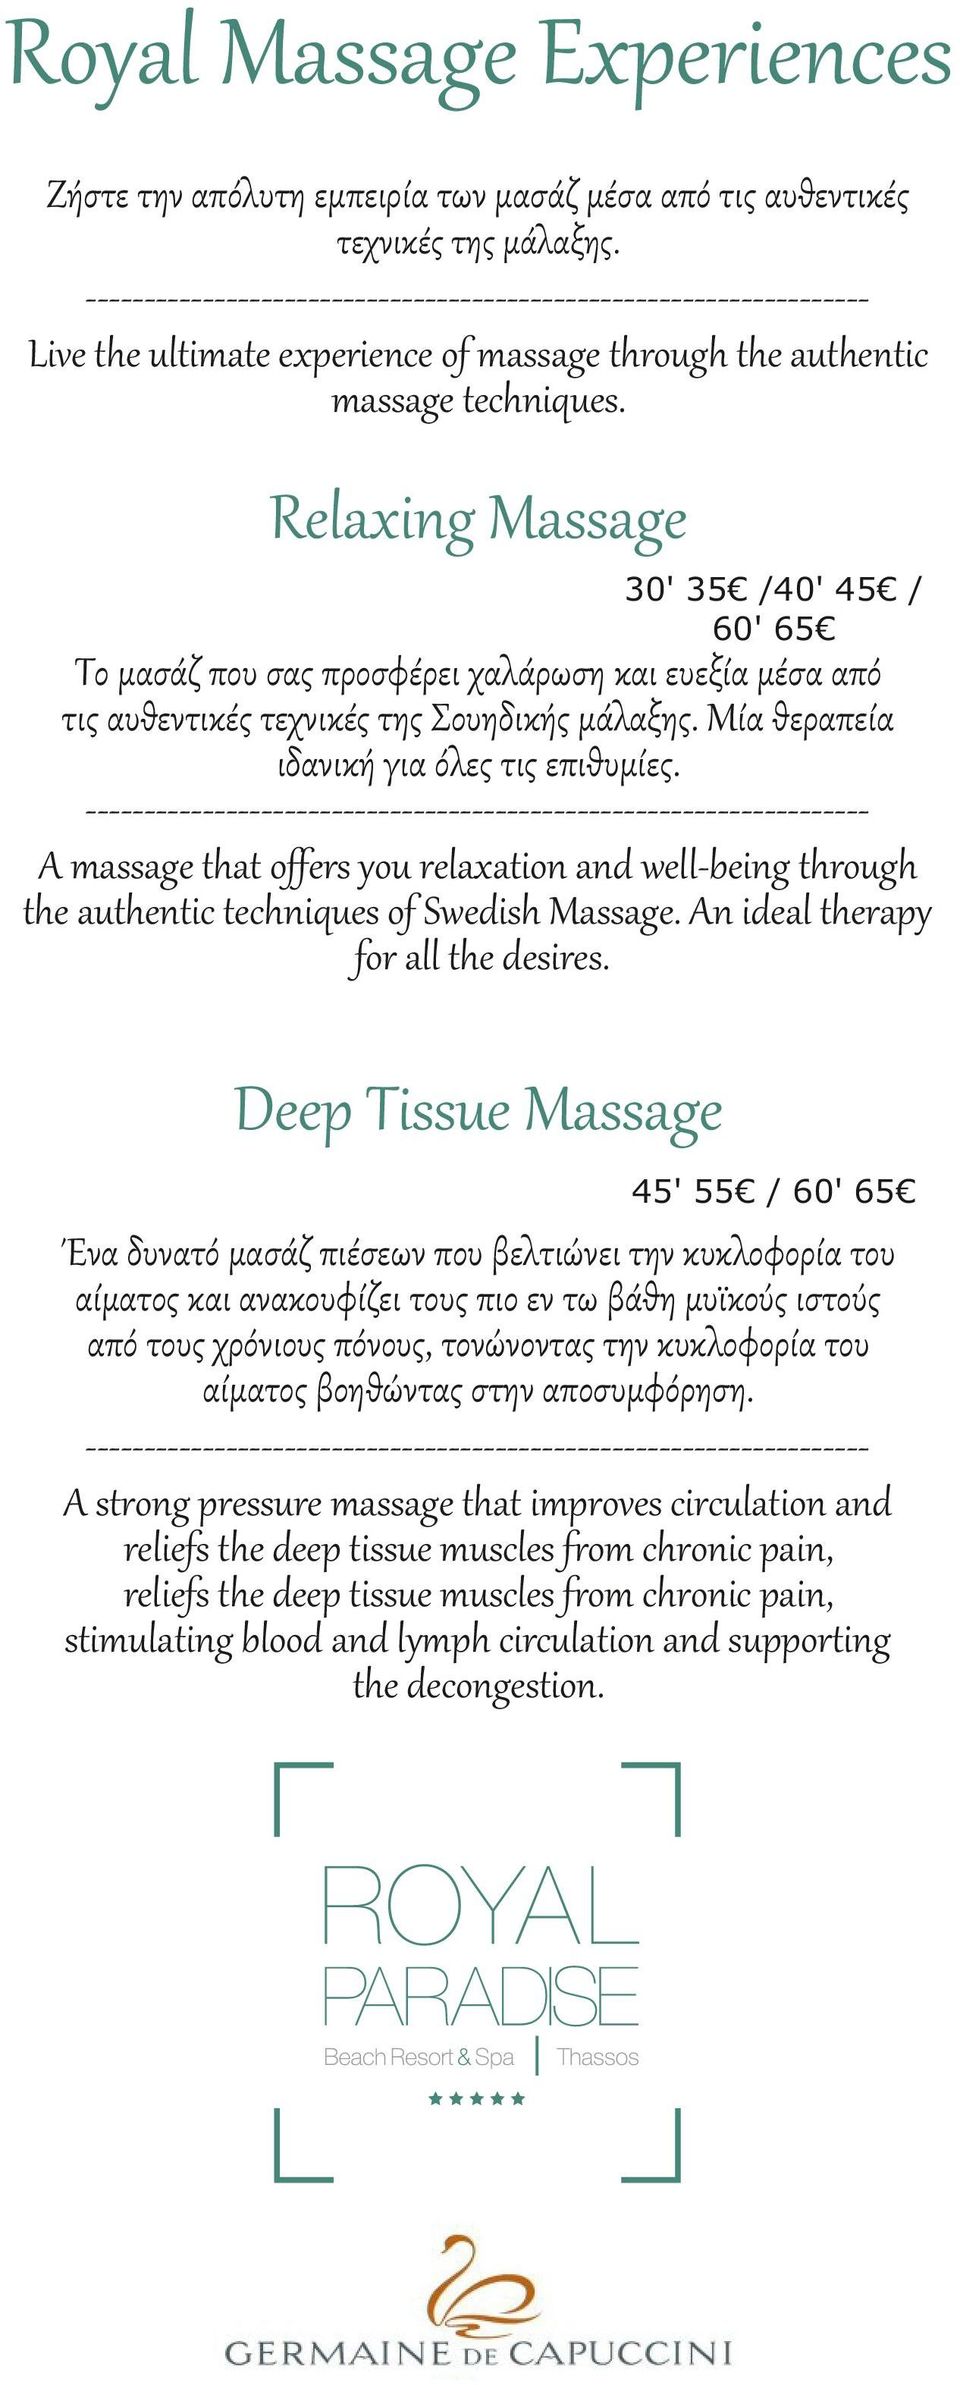 Relaxing Massage 30' 35 /40' 45 / 60' 65 Το μασάζ που σας προσφέρει χαλάρωση και ευεξία μέσα από τις αυθεντικές τεχνικές της Σουηδικής μάλαξης. Μία θεραπεία ιδανική για όλες τις επιθυμίες.